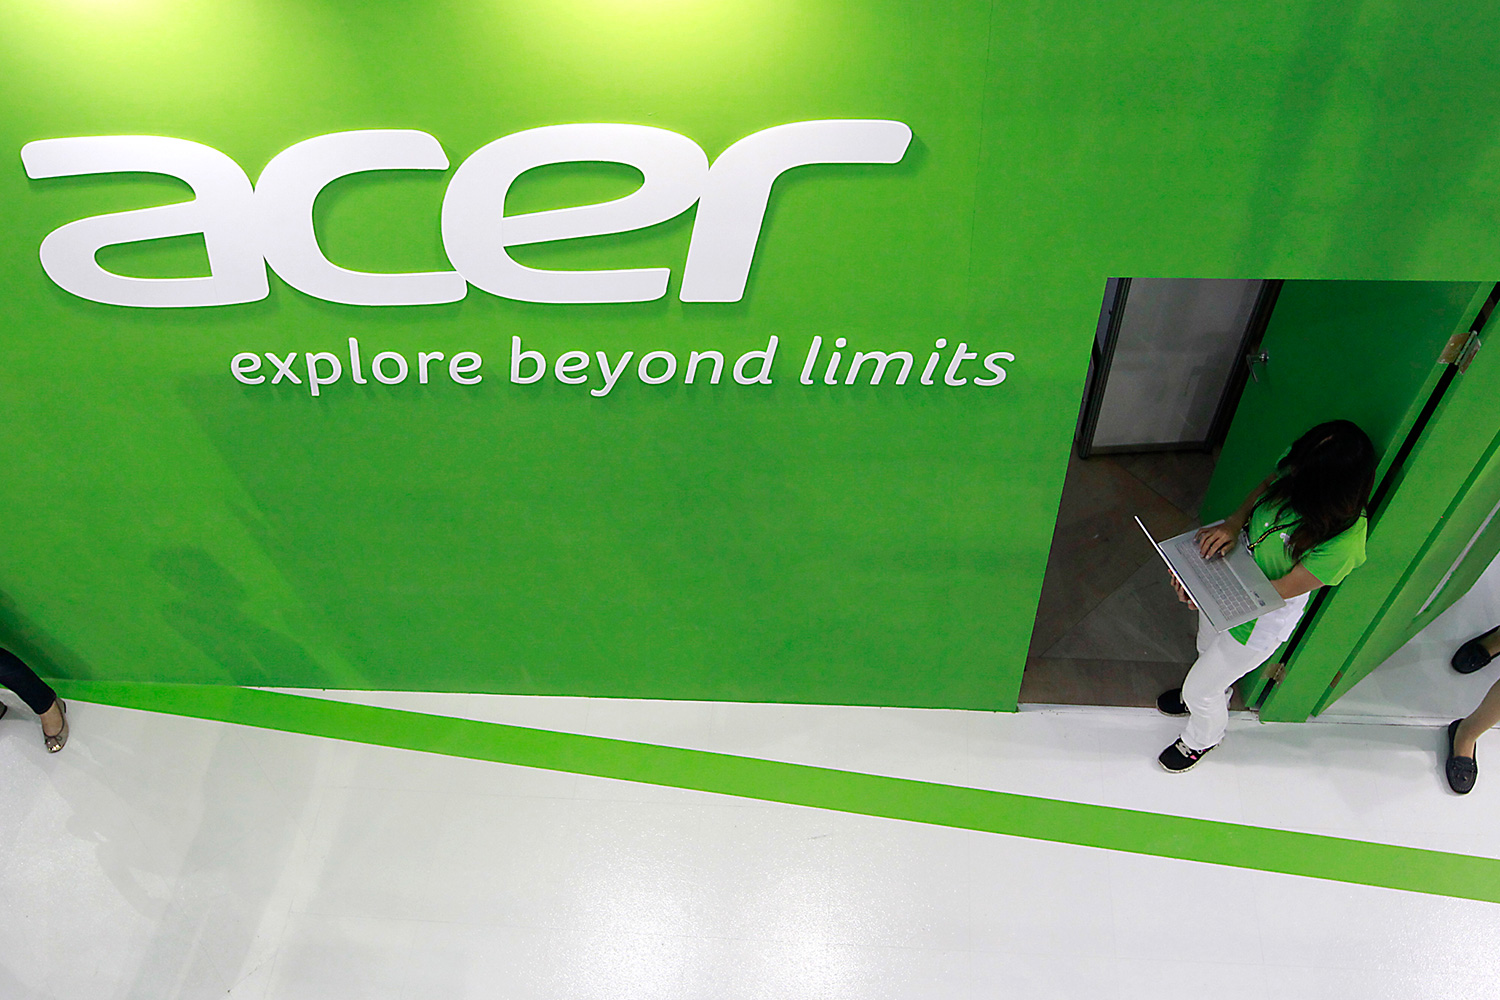 Hackean Acer y roban más de 34.000 datos bancarios de sus clientes